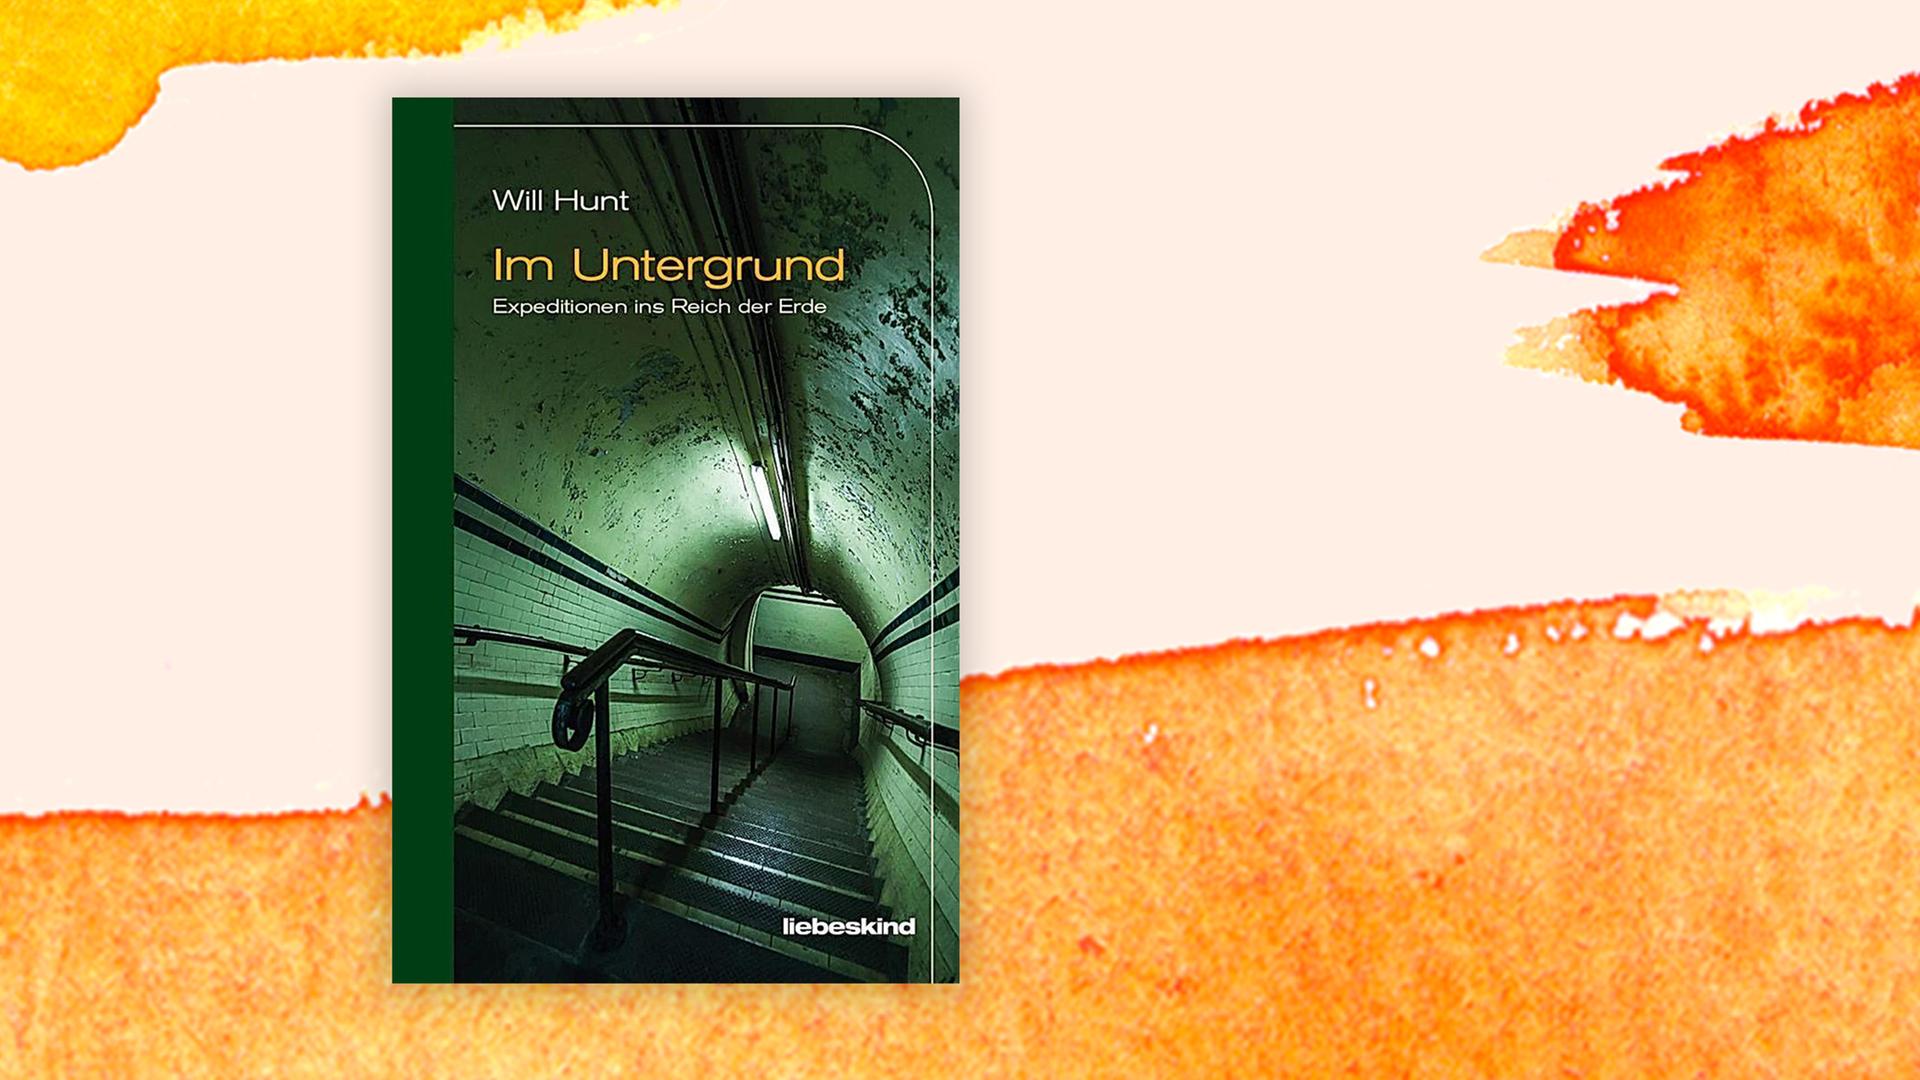 Das Cover zeigt das grün eingefärbte Foto eines in dramatischer Perspektive fotografierten Treppentunnels.